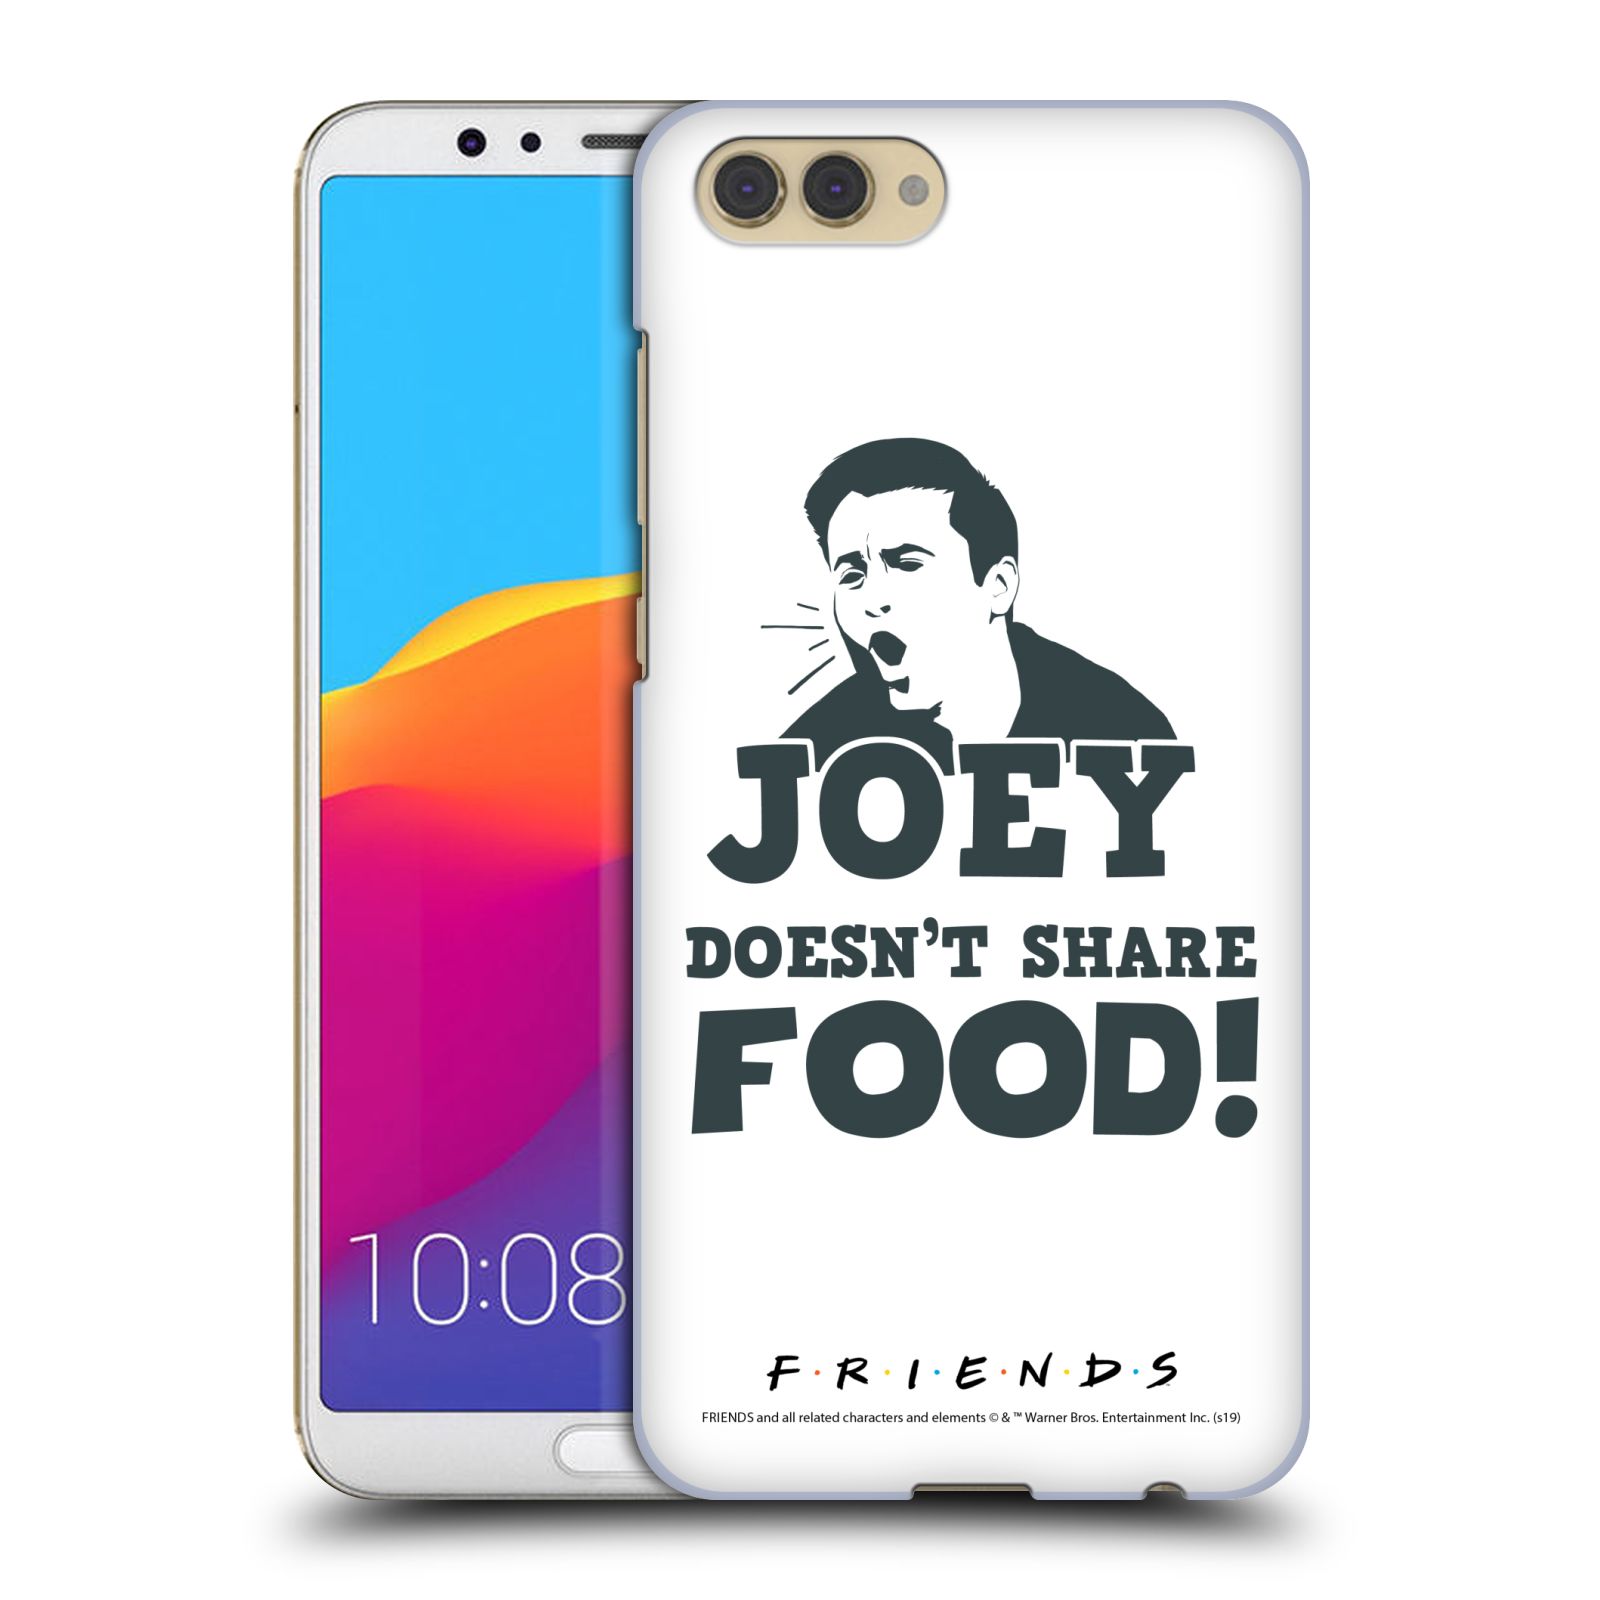 Pouzdro na mobil HONOR View 10 / V10 - HEAD CASE - Seriál Přátelé - Joey se o jídlo nedělí